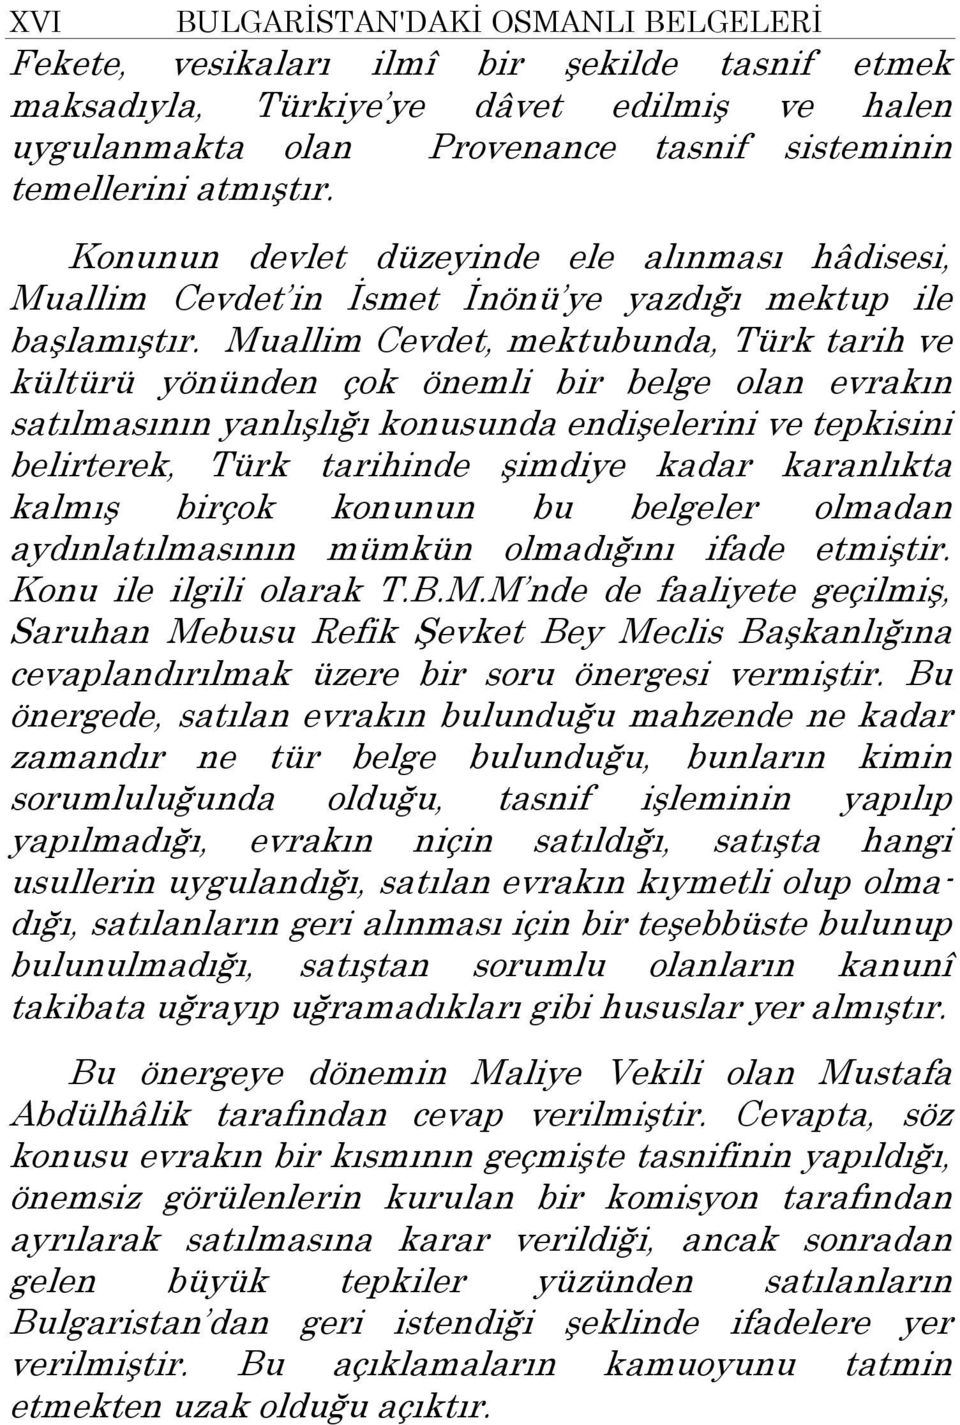 Muallim Cevdet, mektubunda, Türk tarih ve kültürü yönünden çok önemli bir belge olan evrakın satılmasının yanlışlığı konusunda endişelerini ve tepkisini belirterek, Türk tarihinde şimdiye kadar